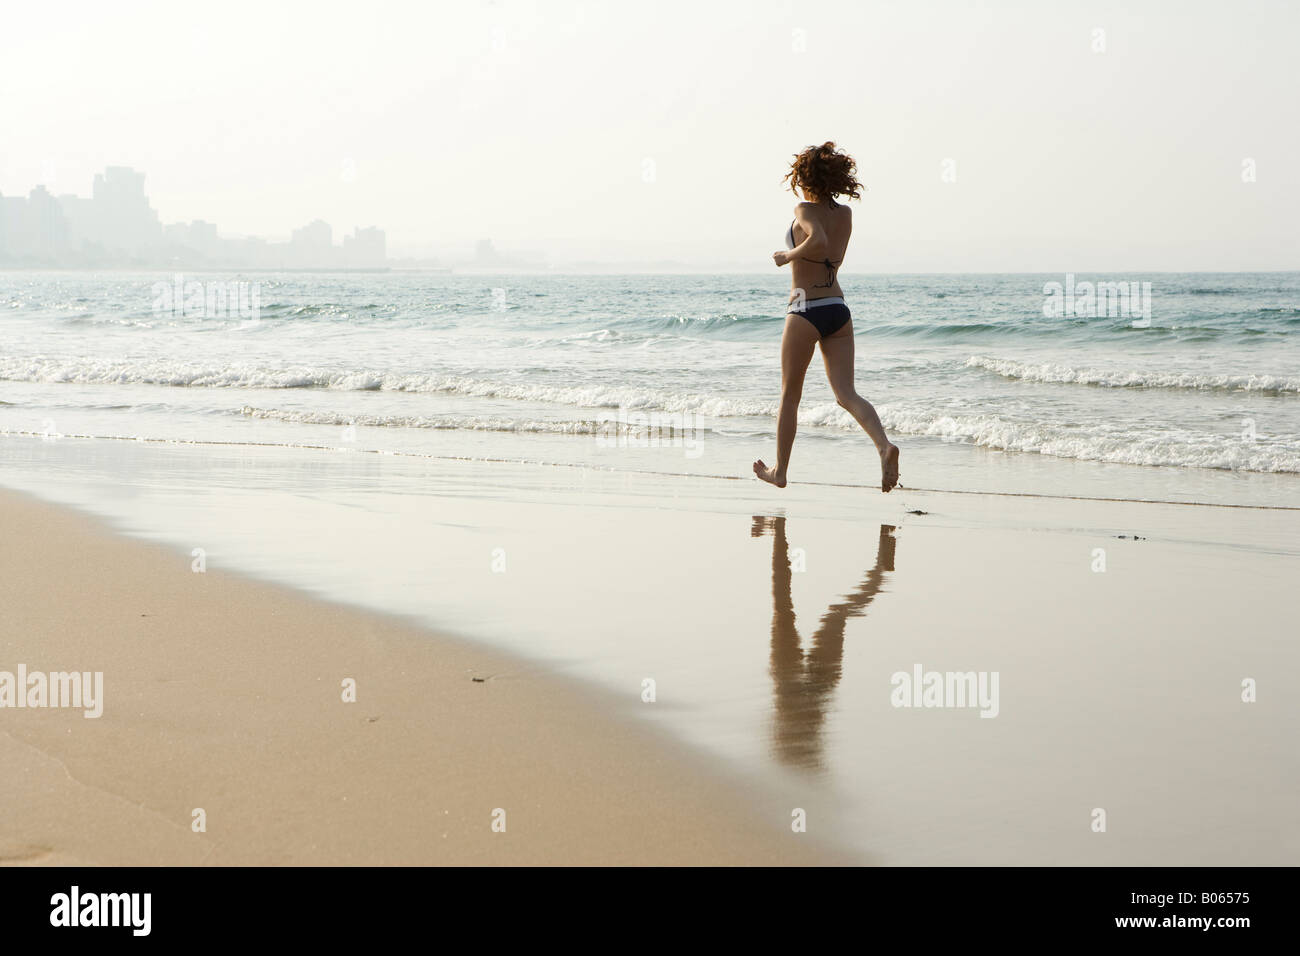 Running at the beach Stock Photo